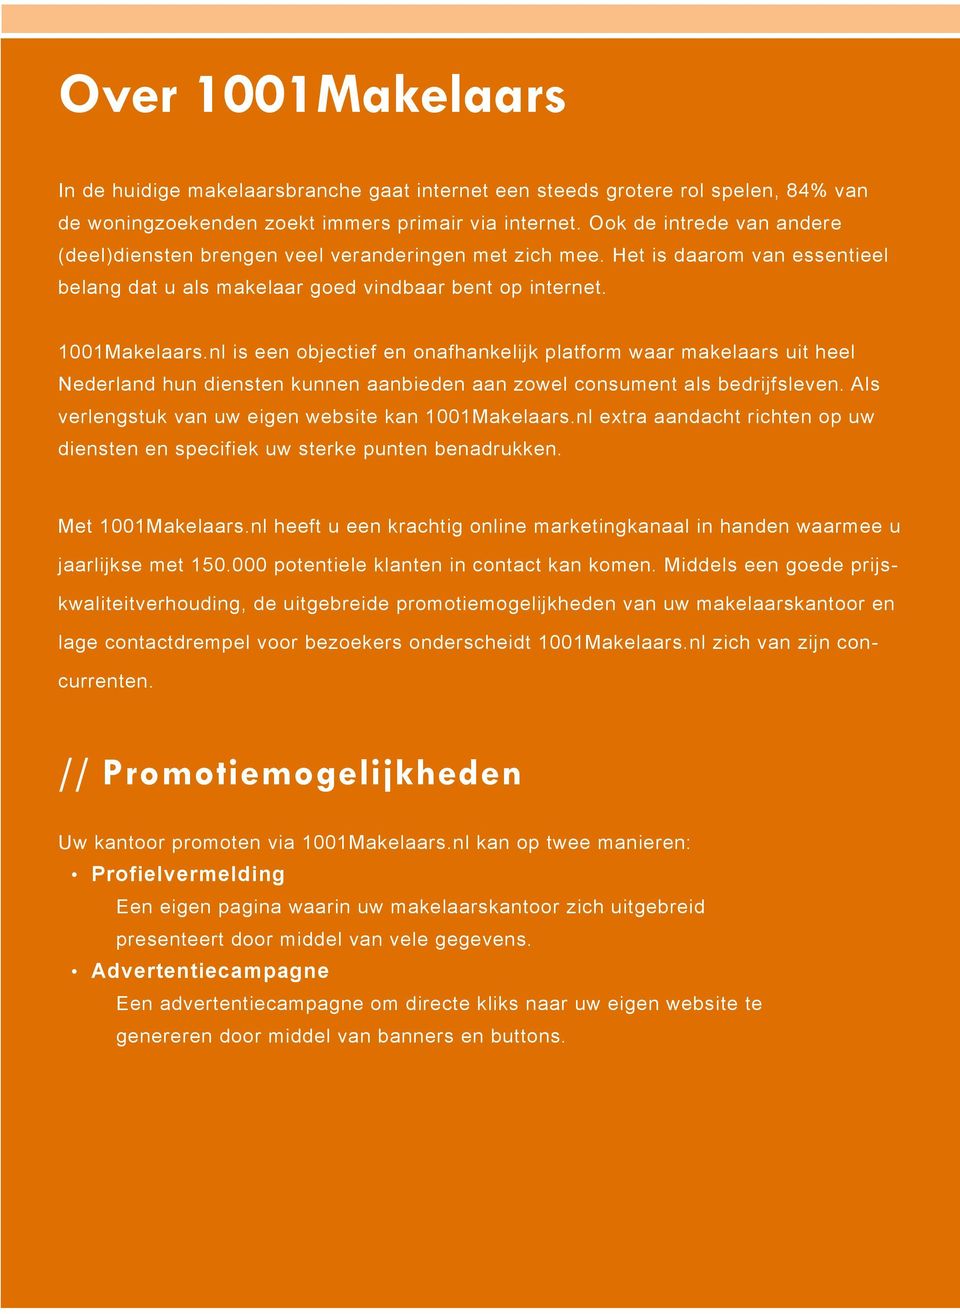 nl is een objectief en onafhankelijk platform waar makelaars uit heel Nederland hun diensten kunnen aanbieden aan zowel consument als bedrijfsleven.